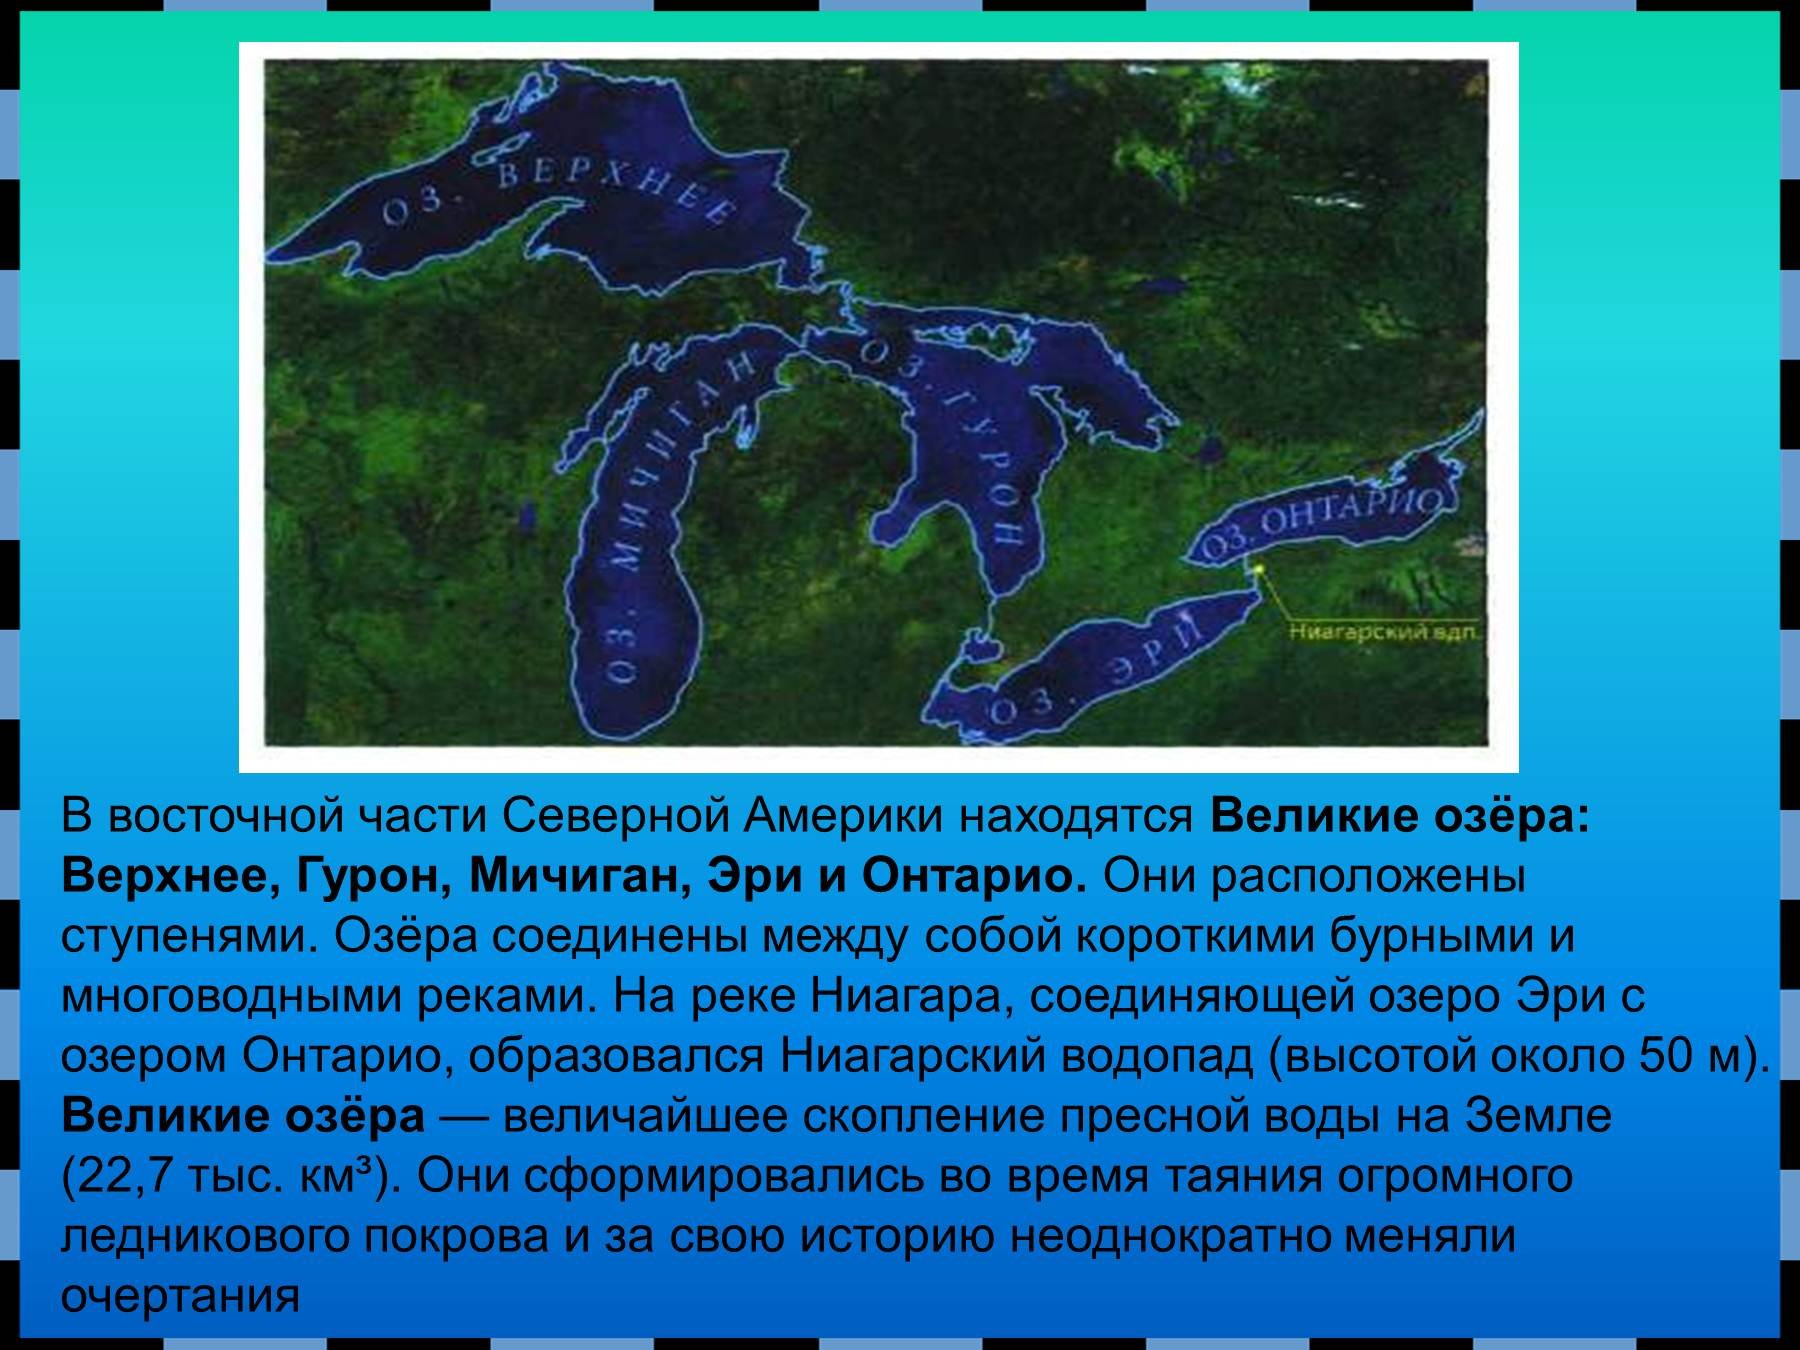 Какие озера входят в великие американские озера. Великие озера верхнее озеро Гурон Мичиган Эри и Онтарио. Озеро Гурон Северная Америка. Озера: Великие озера (верхнее Гурон Мичиган Эри Онтарио) на карте. Озеро верхнее Гурон Мичиган Эри.